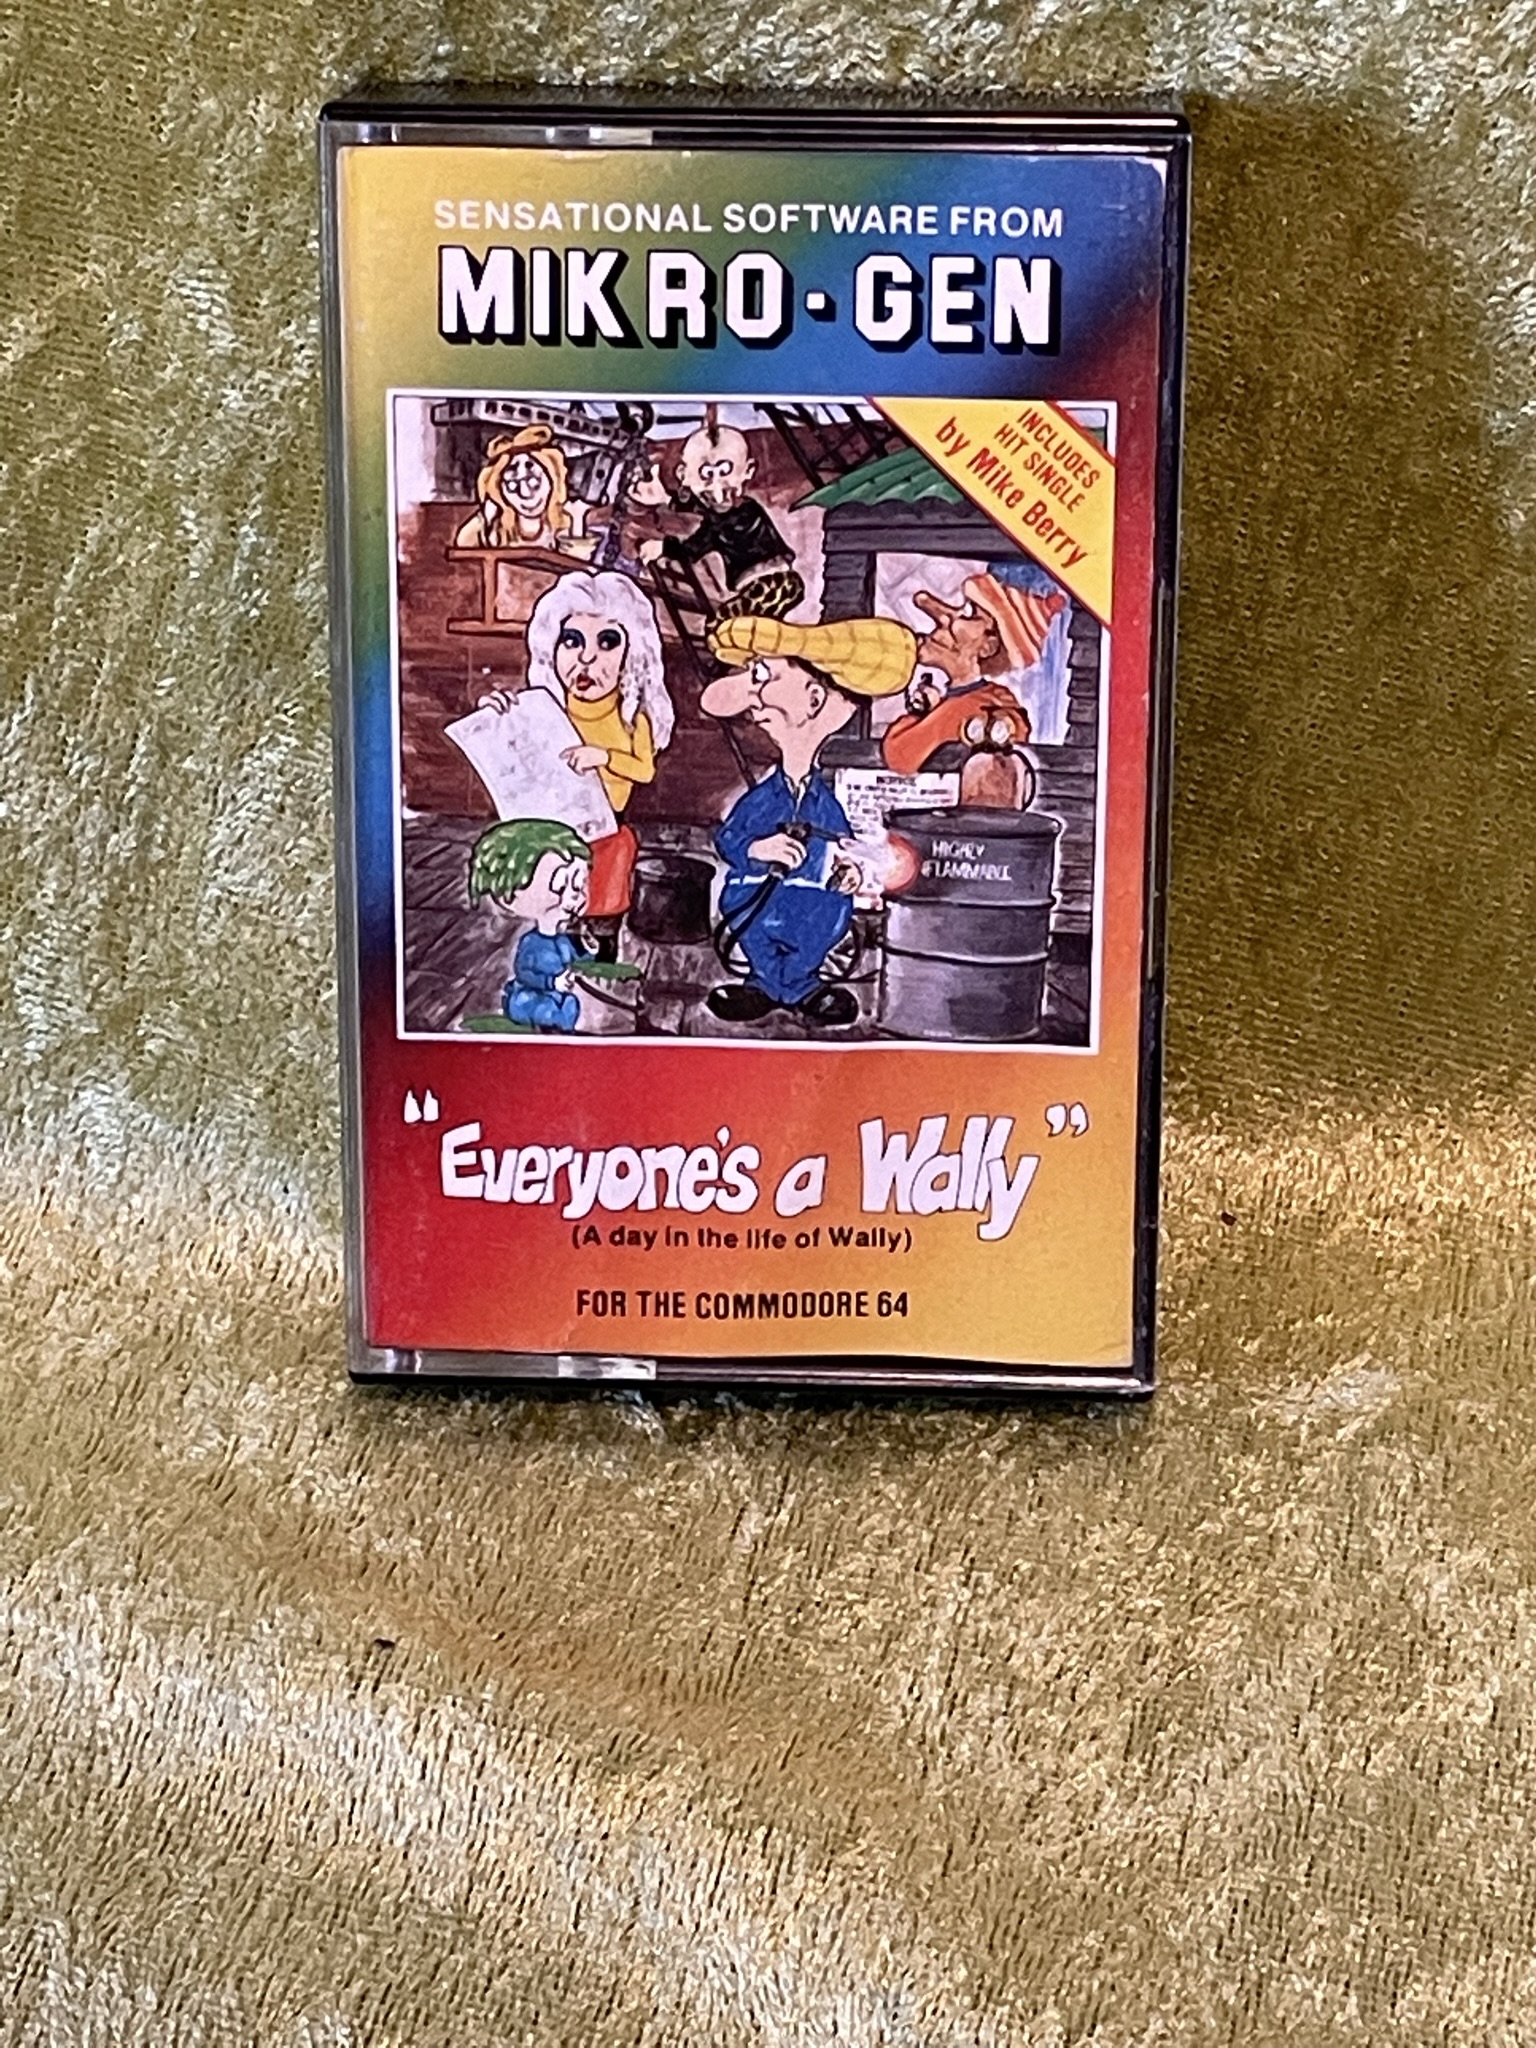 Micro - Gen